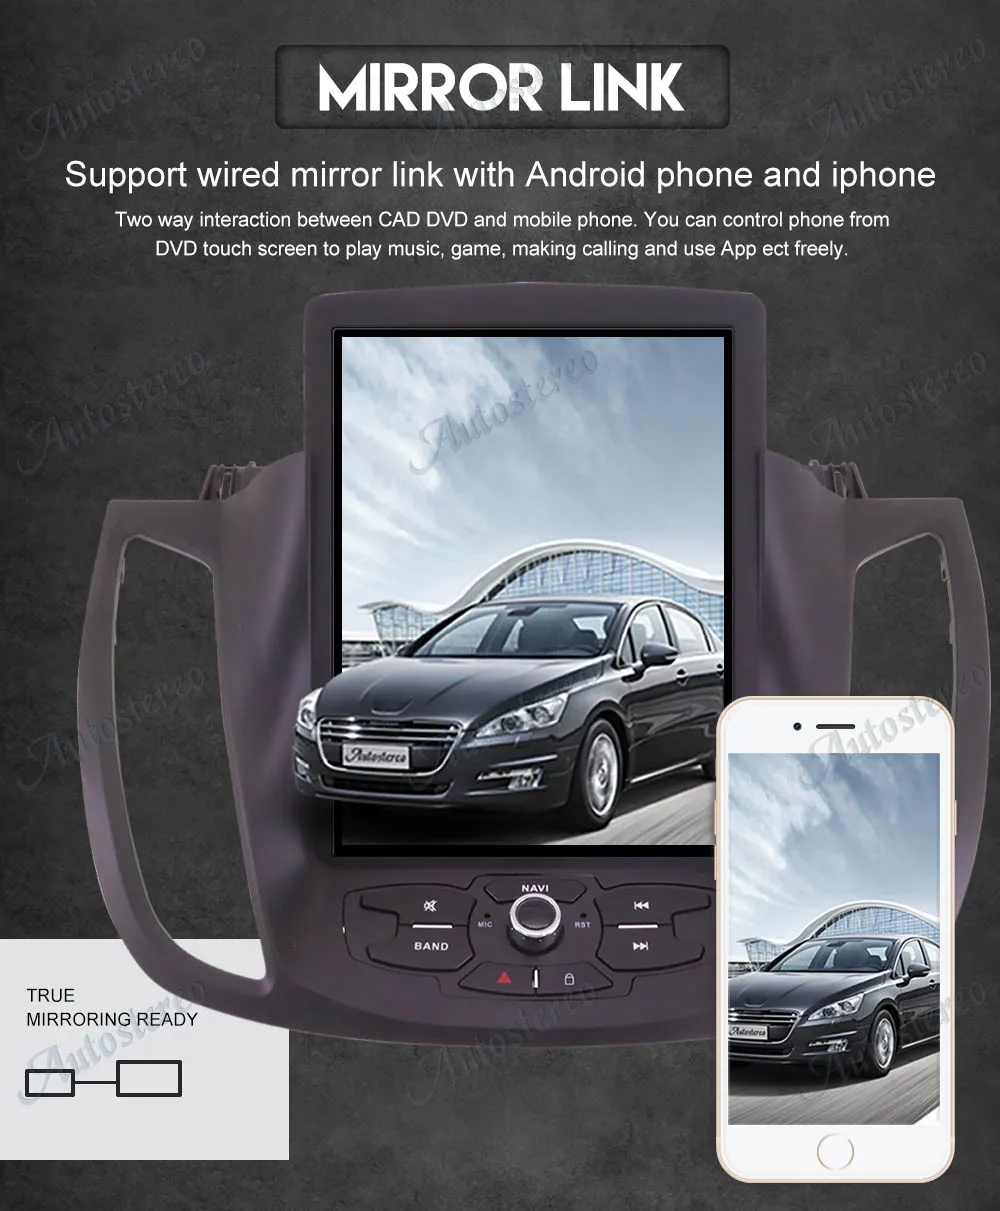 Вертикальный экран Tesla стиль Android 8,1 Автомобильный gps навигатор для FORD EcoSport 2013+ головное устройство мультимедиа авто радио магнитофон